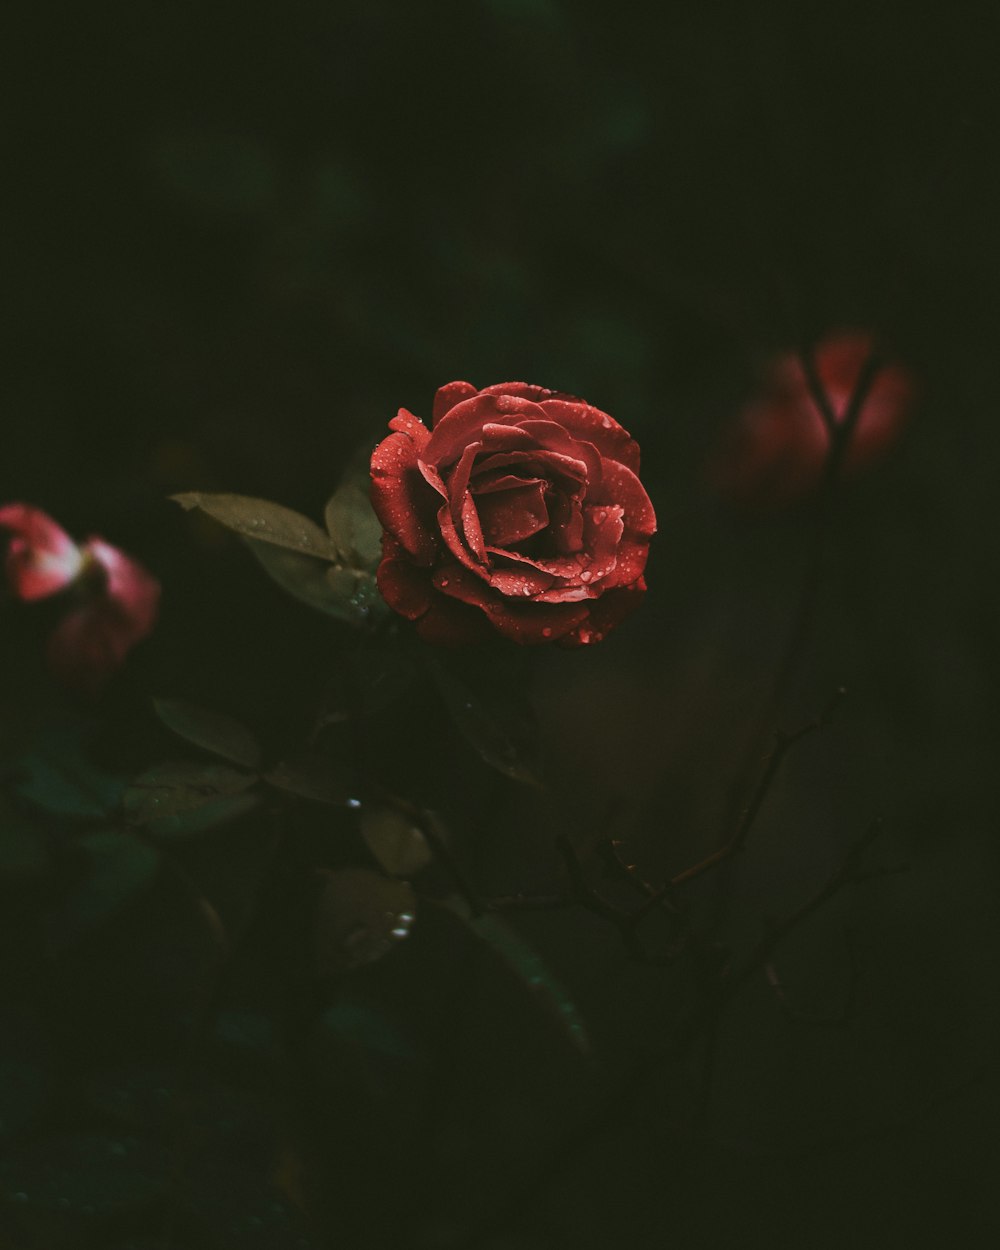 咲き誇る赤いバラのセレクティブフォーカス撮影